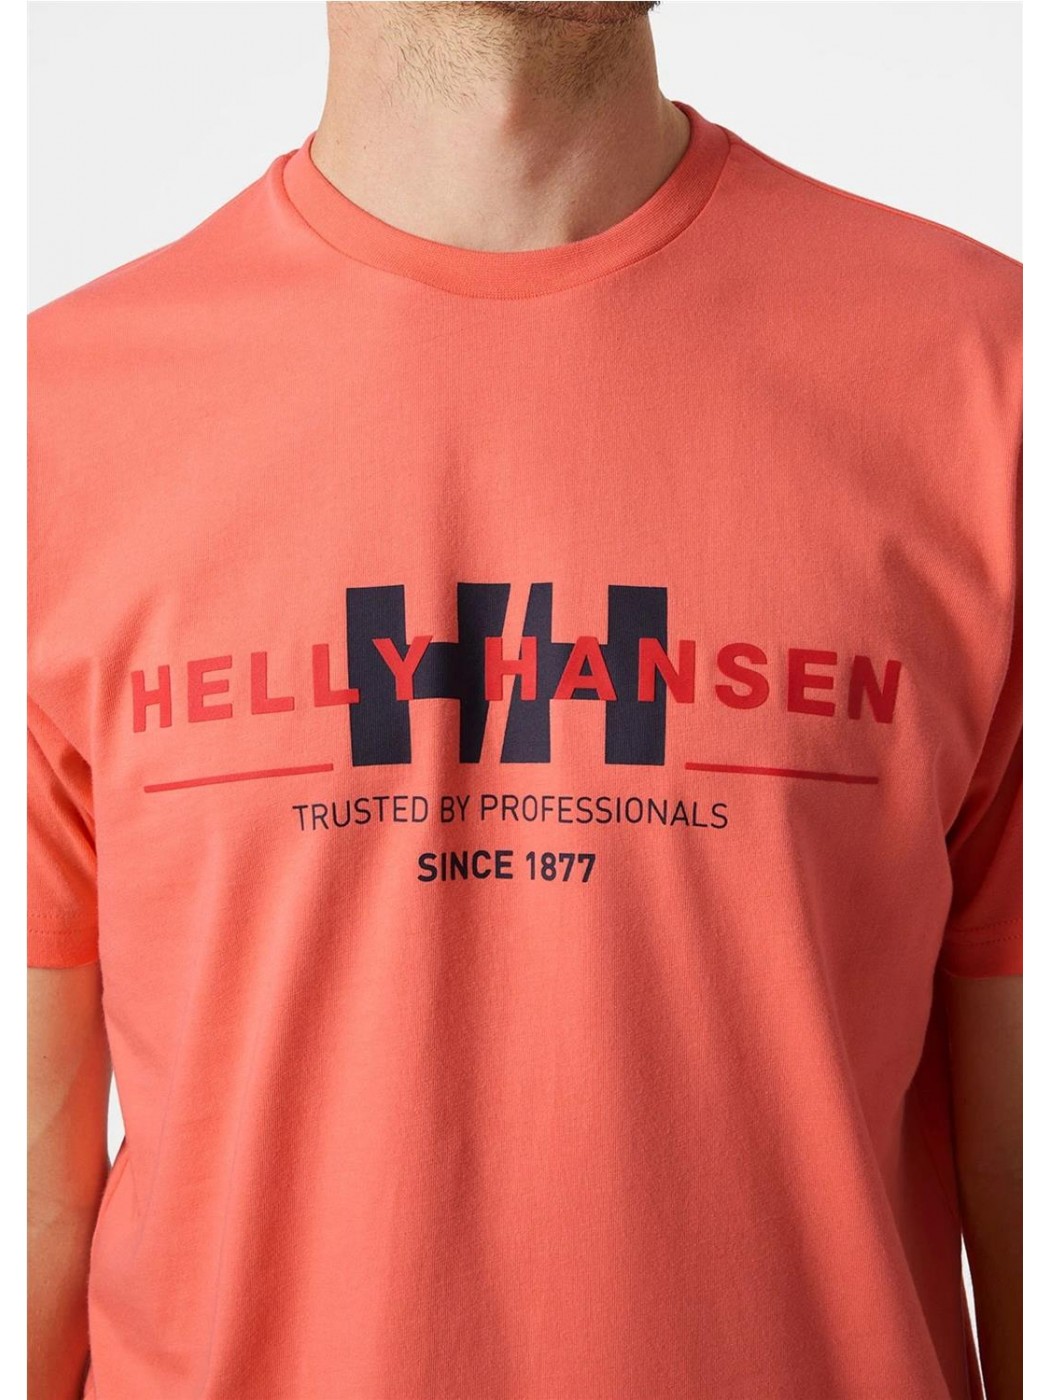 Camiseta Helly Hansen Logo roja para hombre